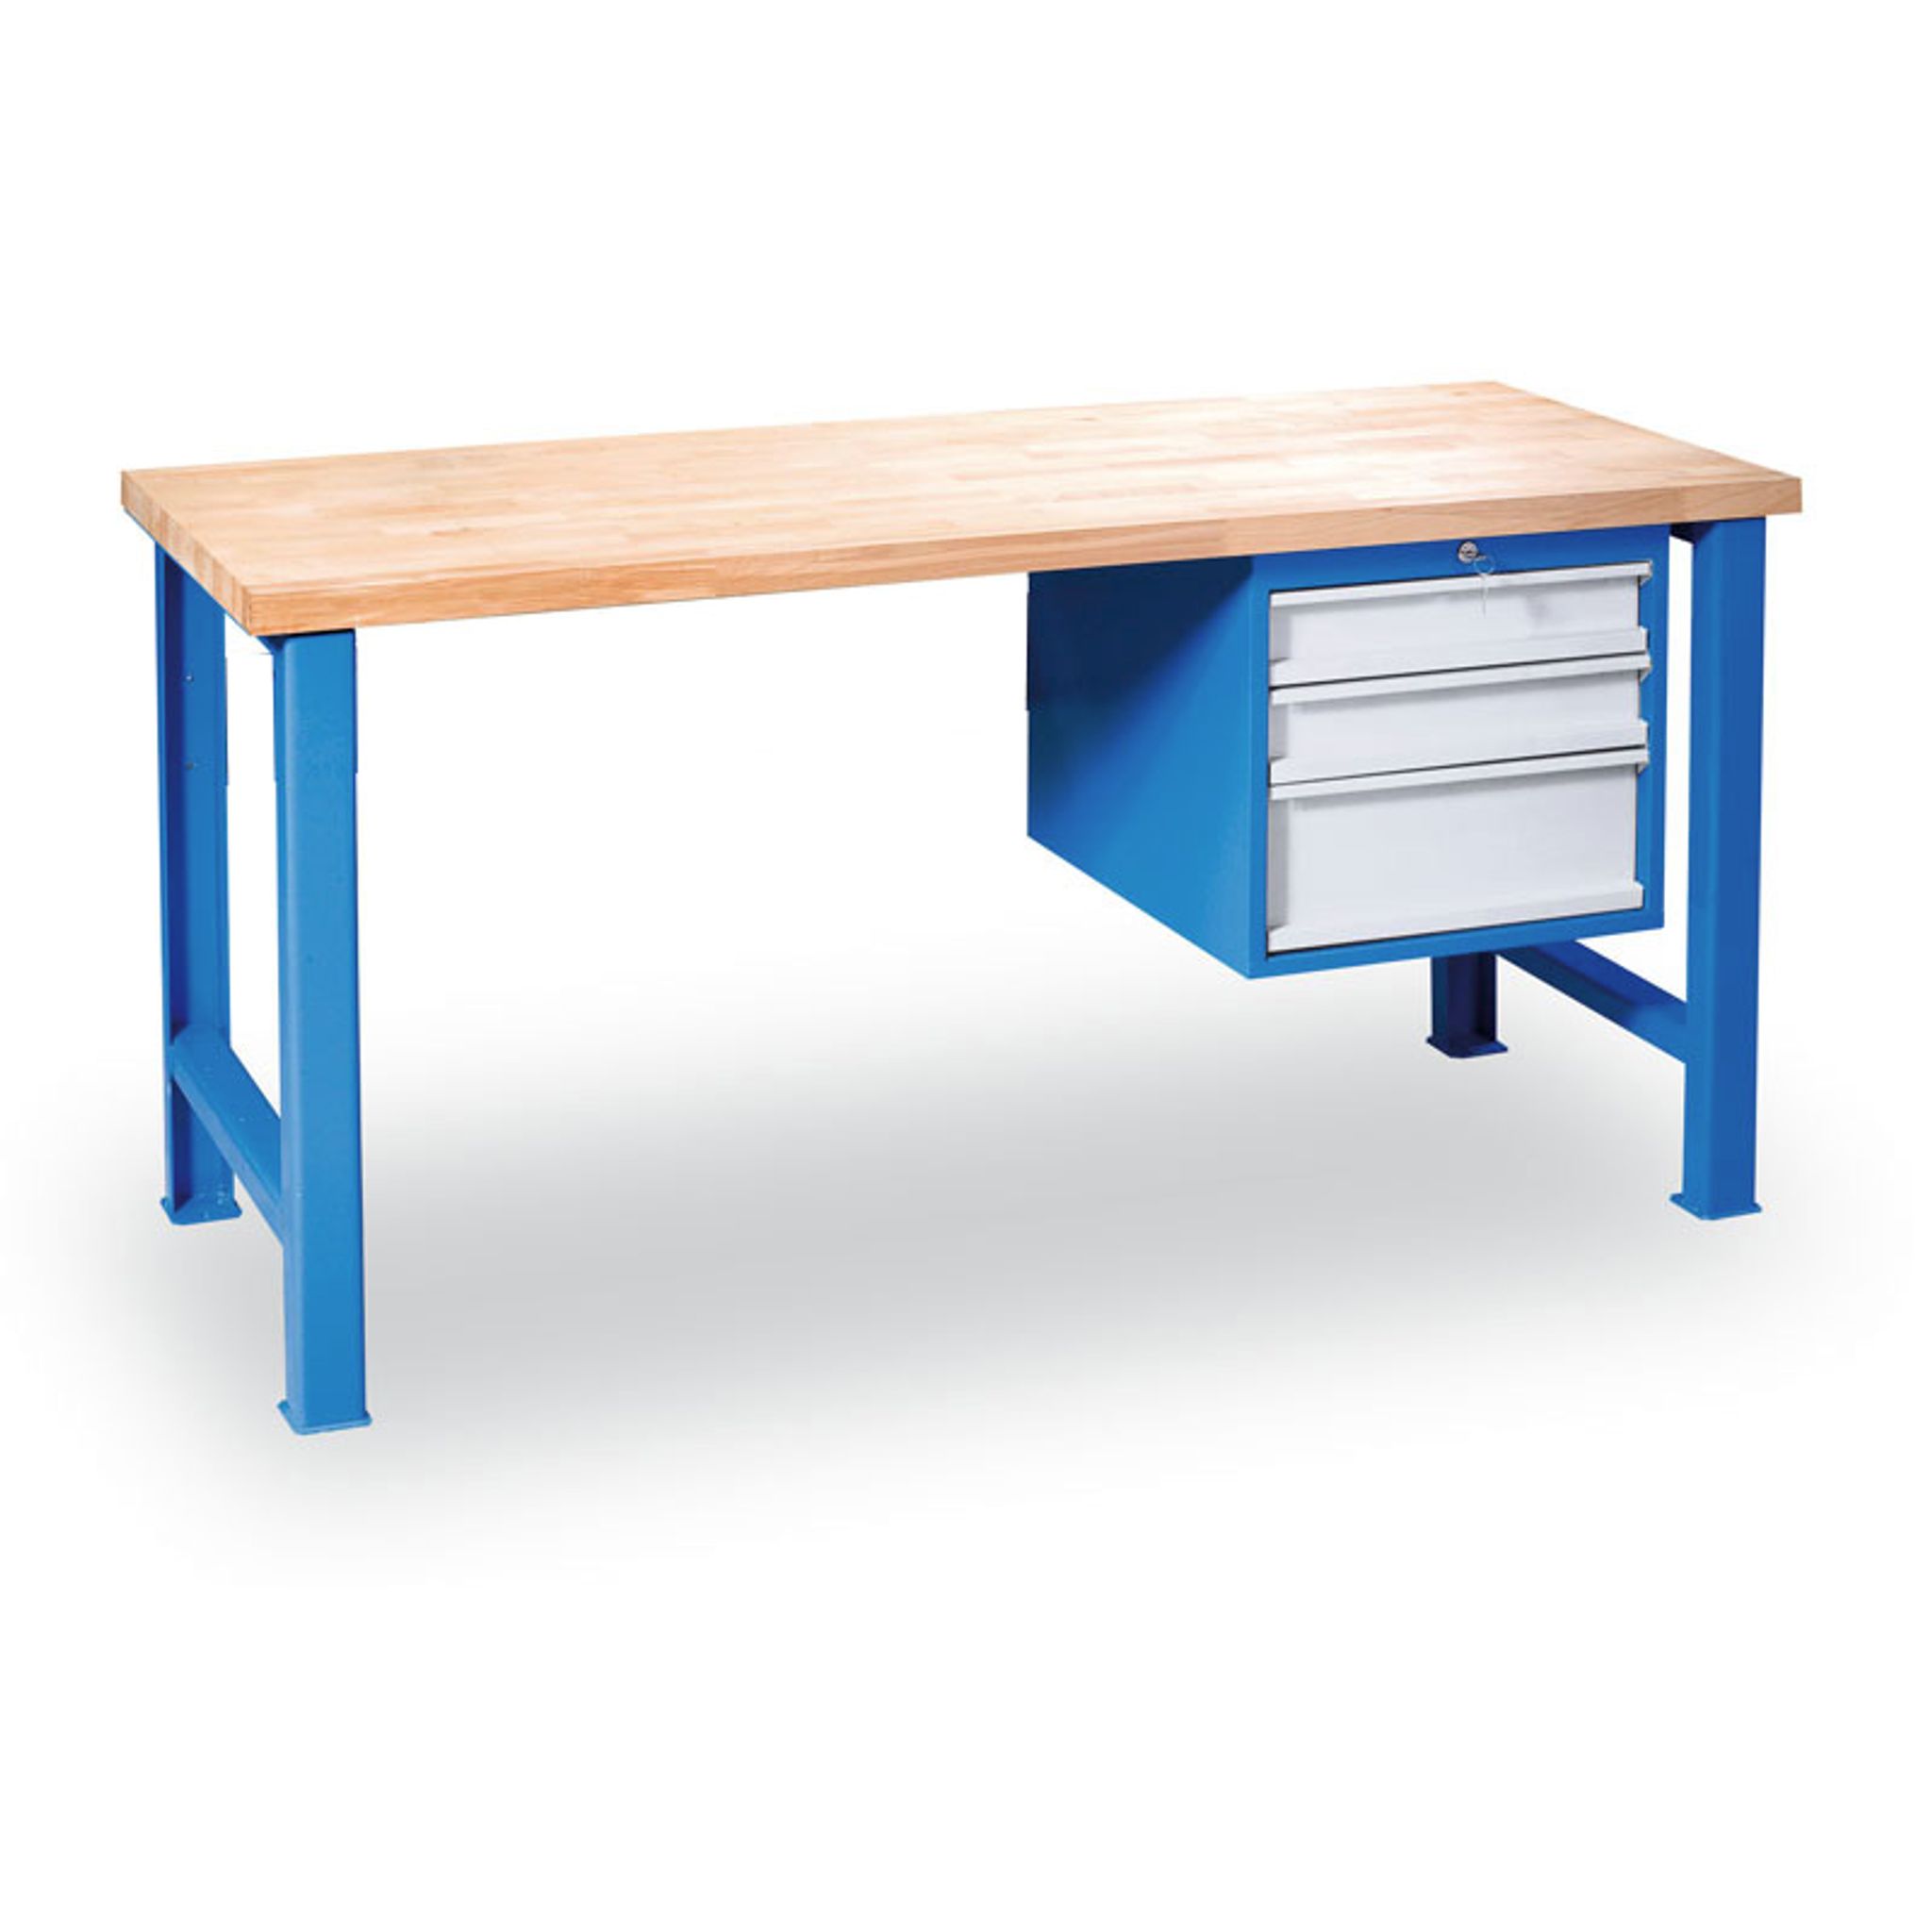 Výškovo nastaviteľný pracovný stôl GÜDE Variant so závesným boxom na náradie, buková škárovka, 3 zásuvky, 1200 x 685 x 850 - 1050 mm, modrá